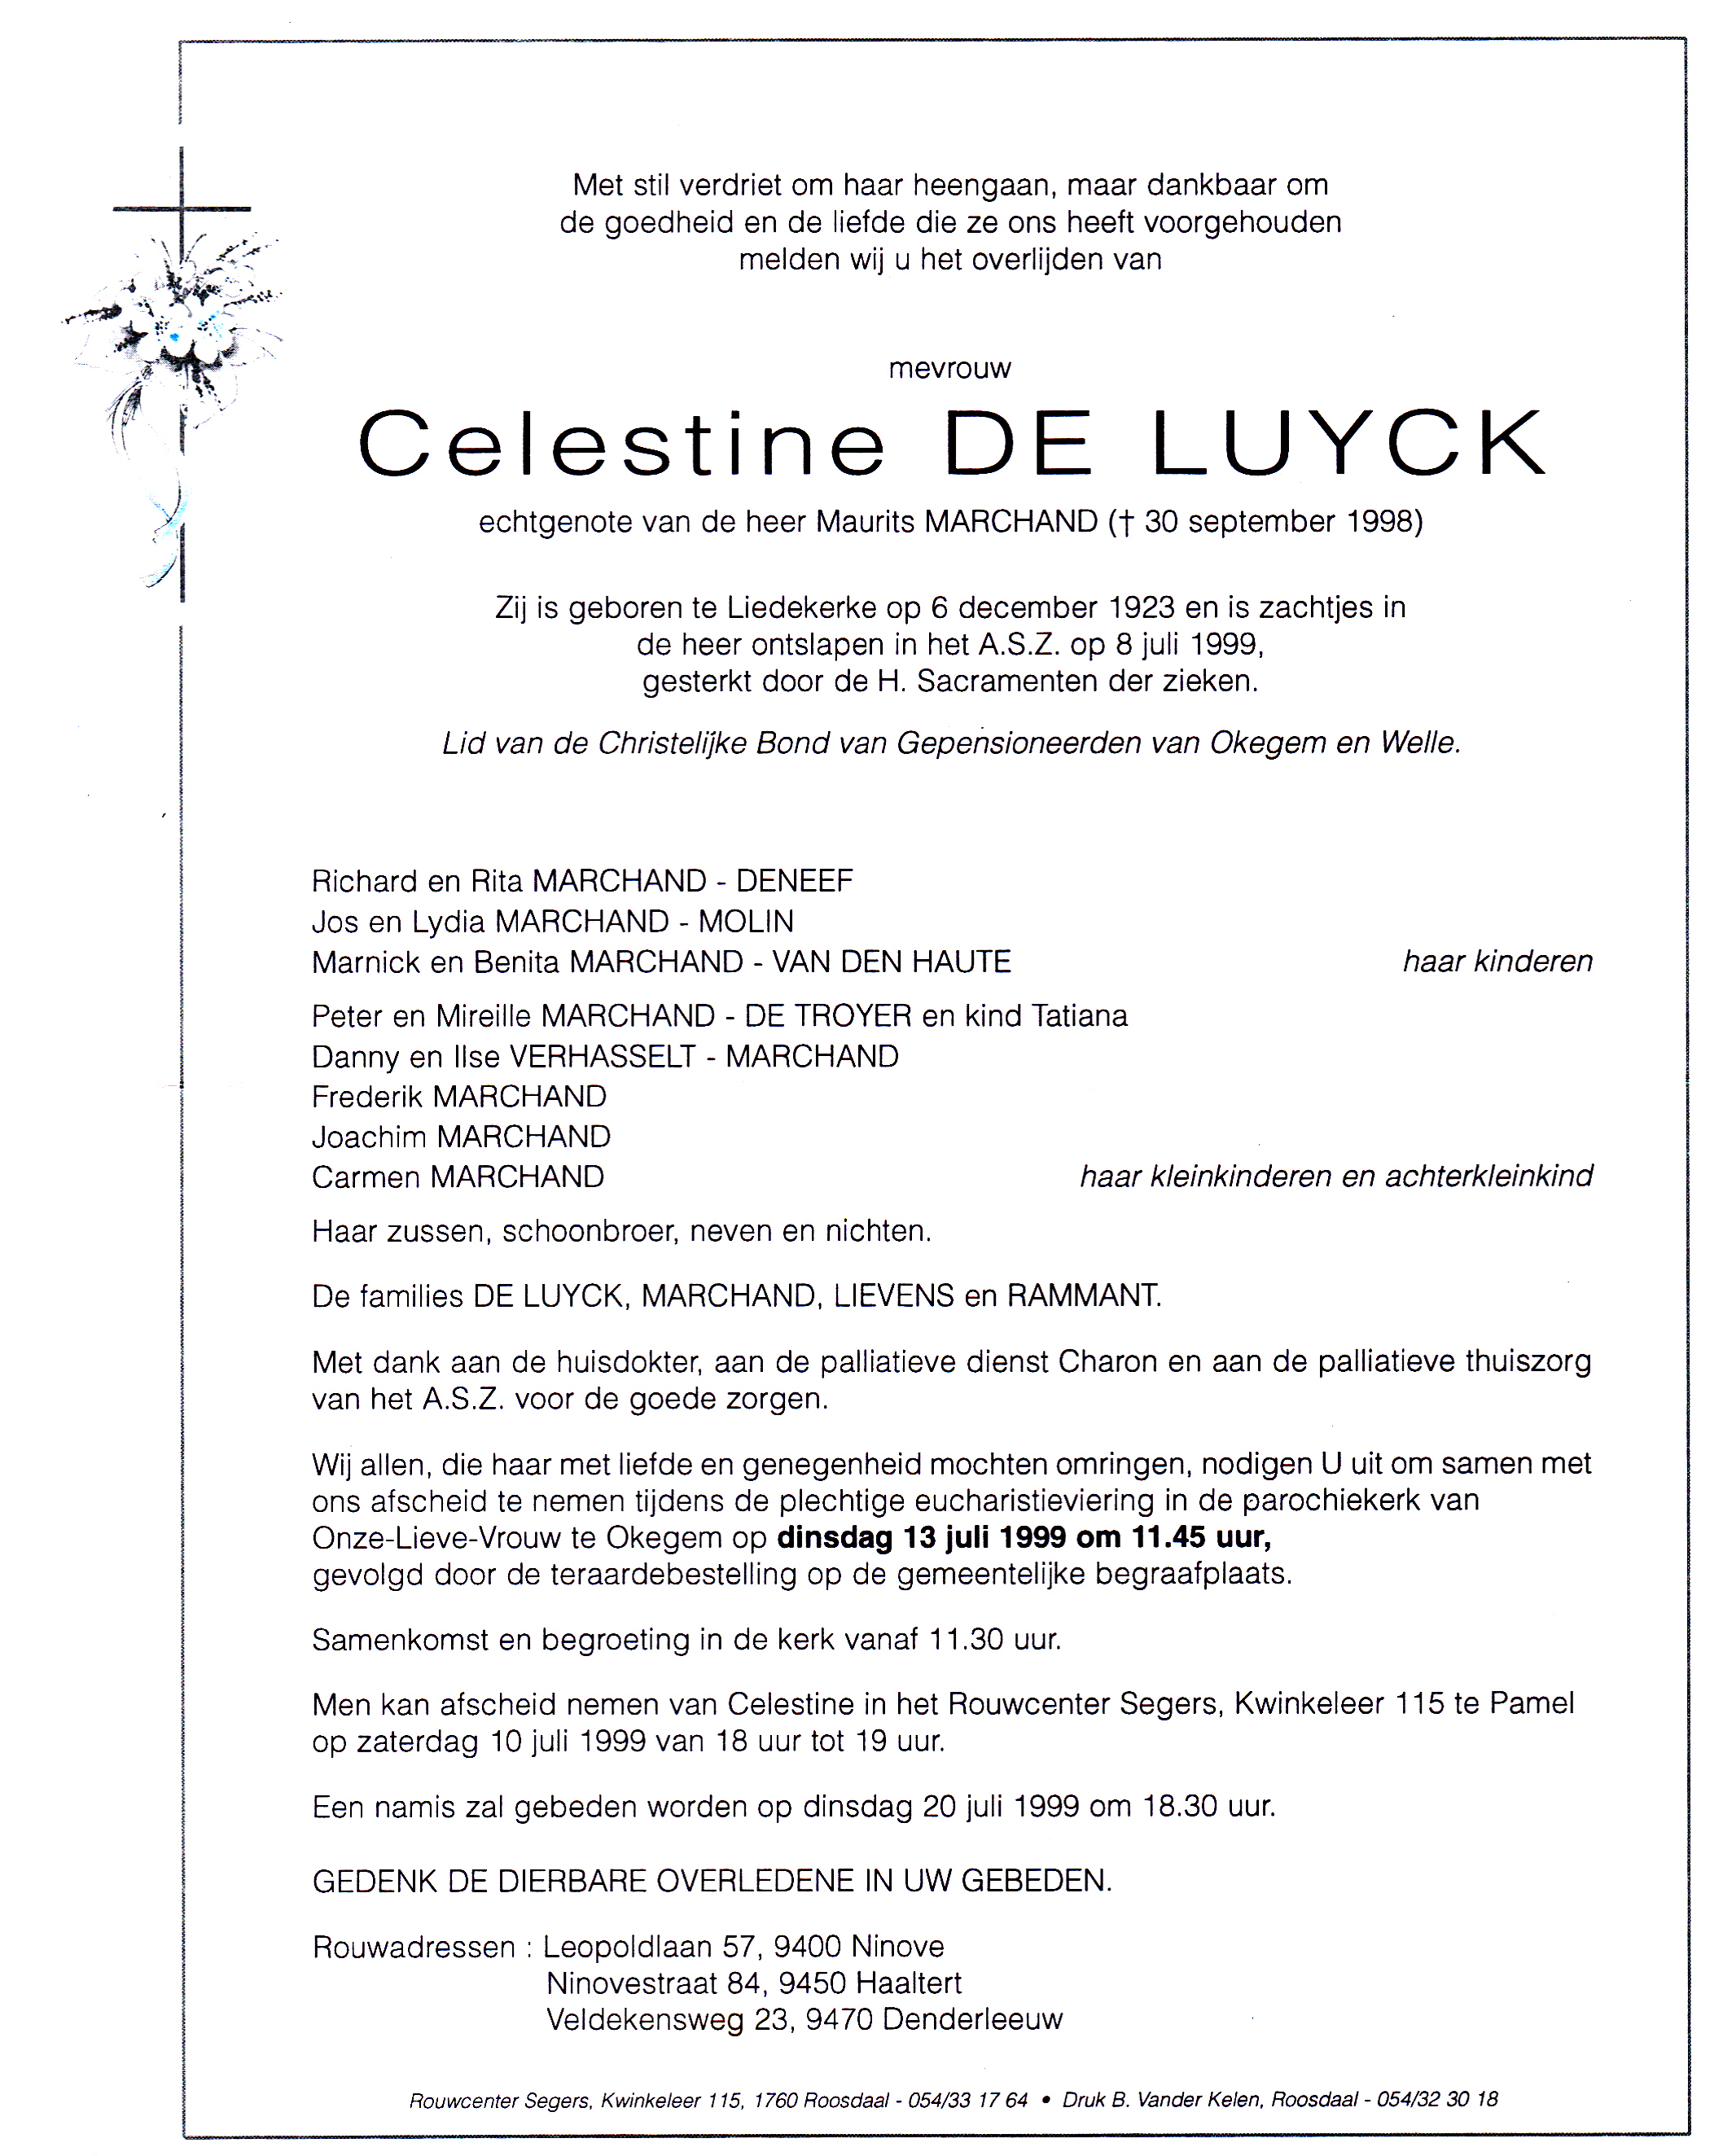 De Luyck Celestine 